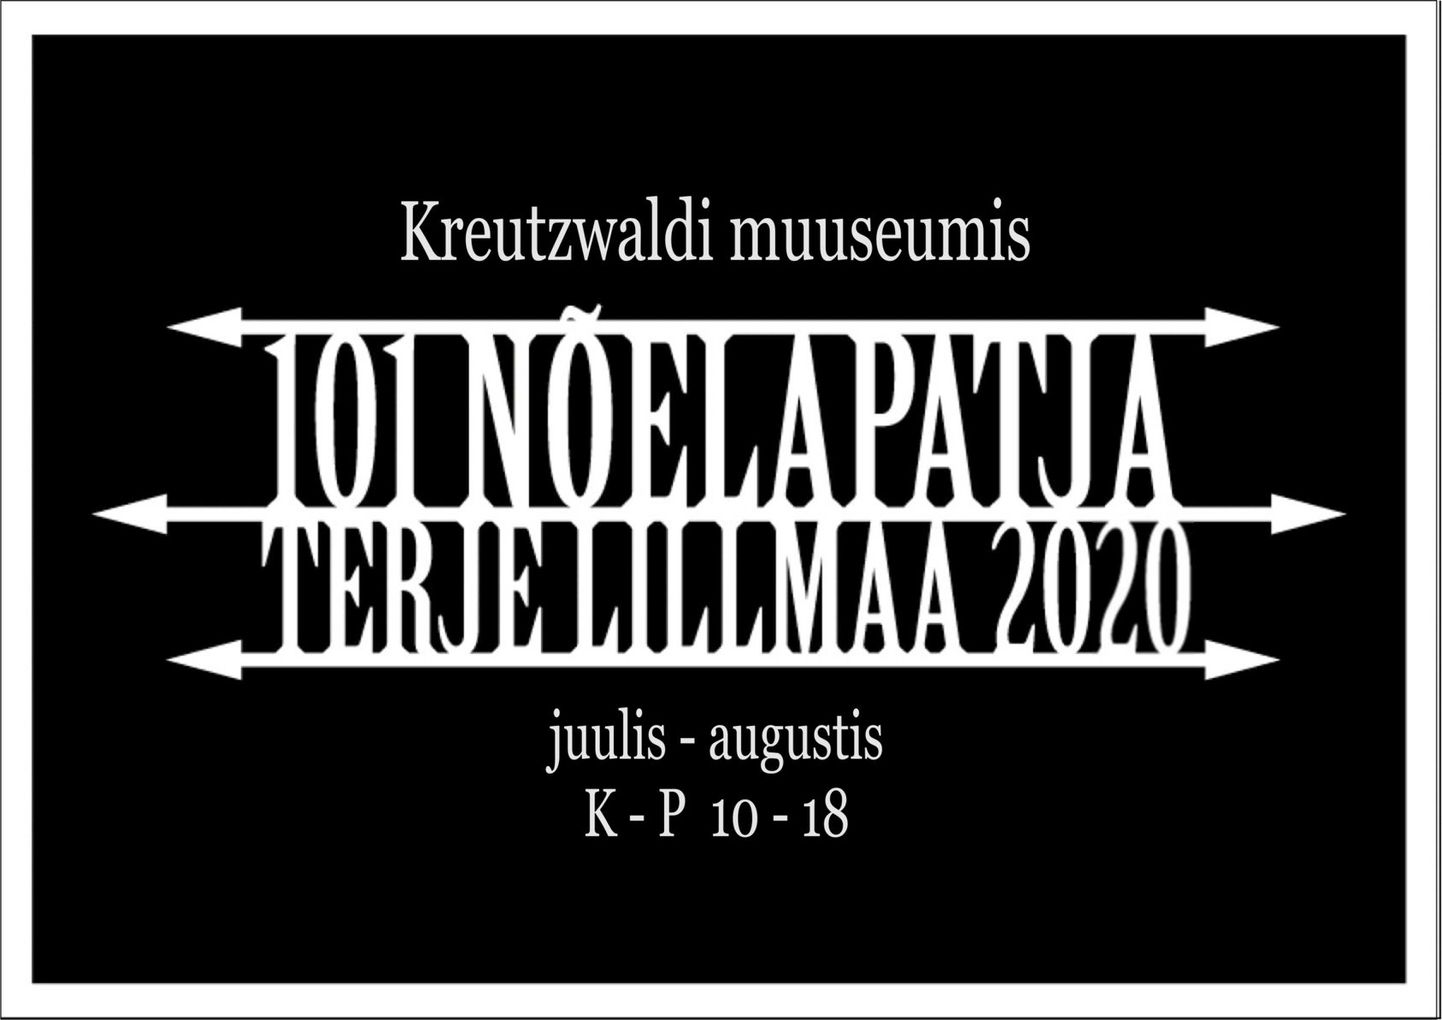 Võru Kreutzwaldi muuseumis on juuli-august 2020 avatud Terje Lillmaa pitsinäitus